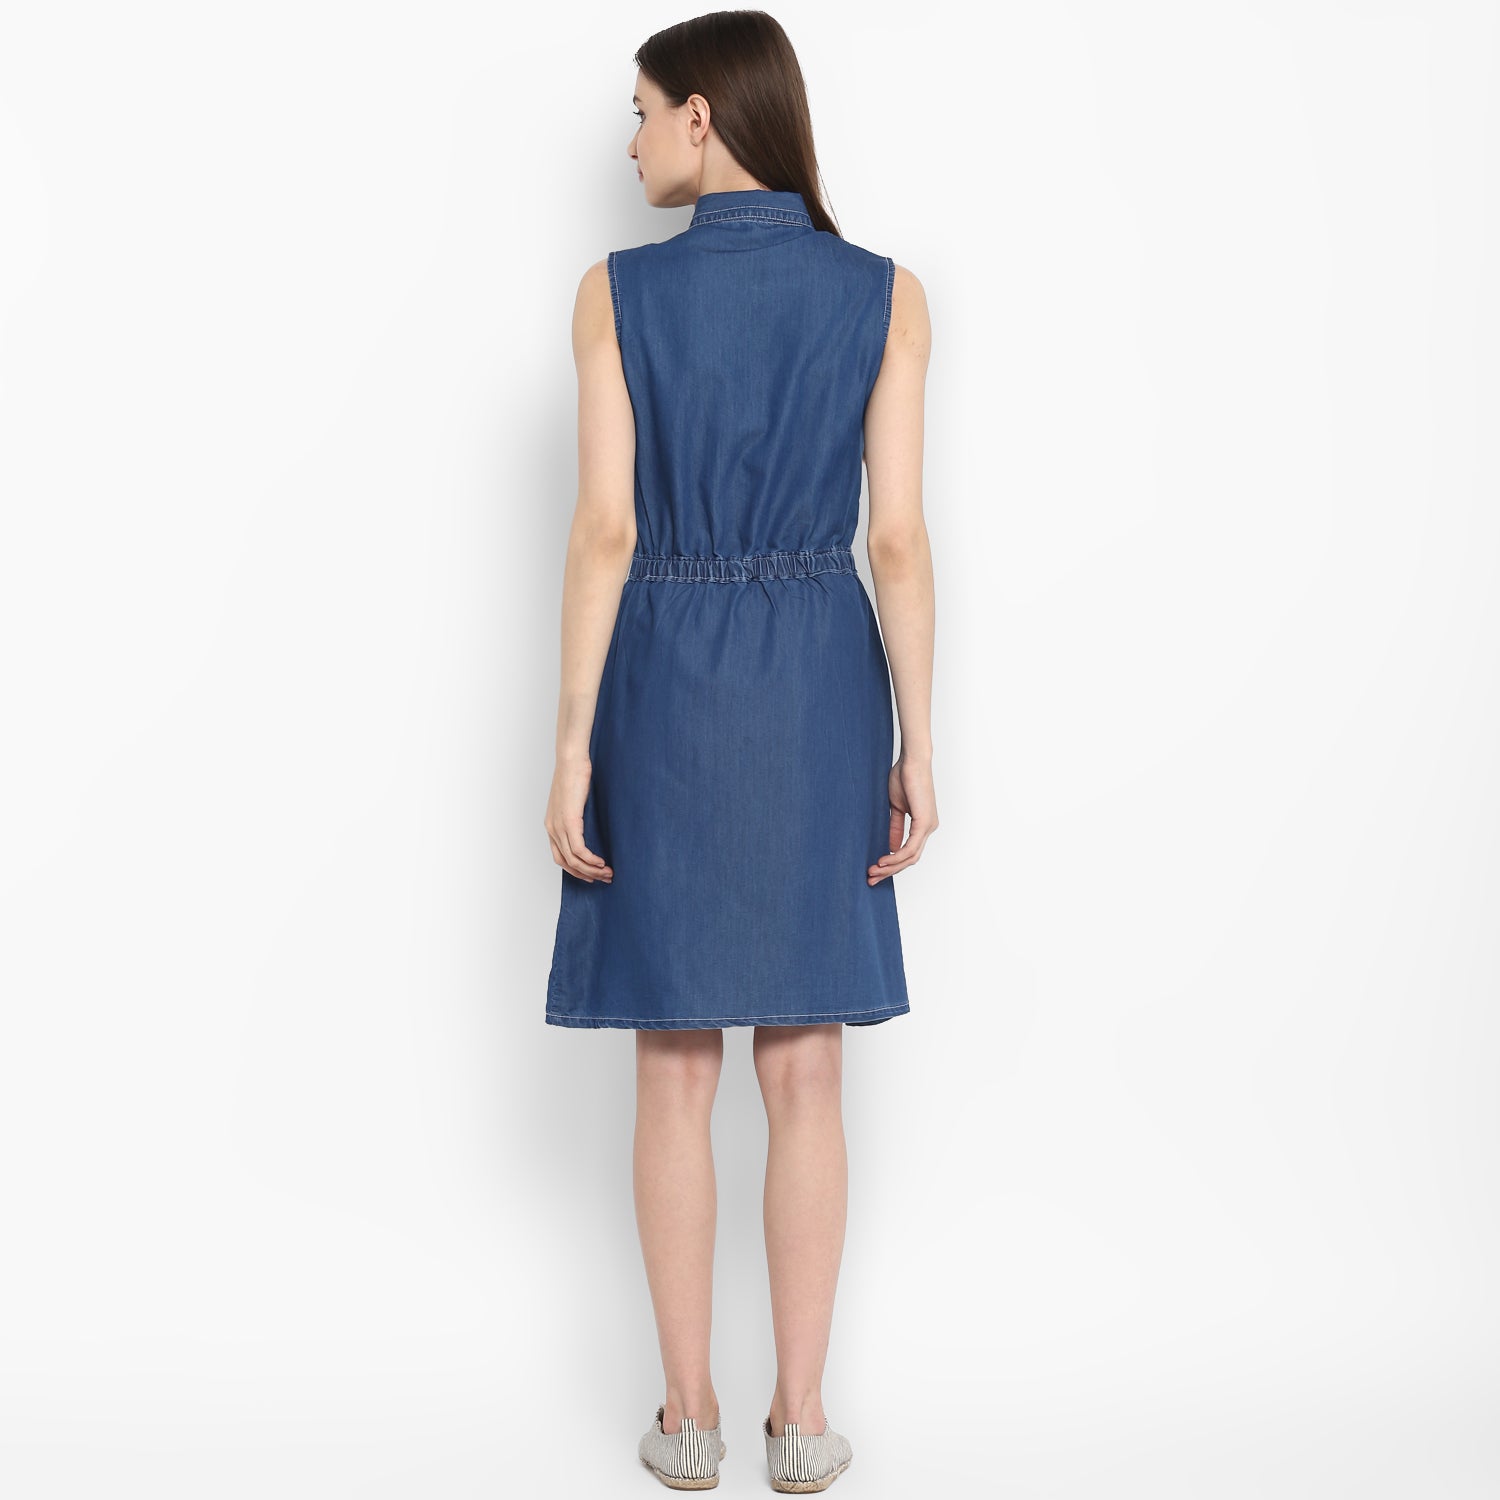 Women's Denim Dress with front Button details - StyleStone